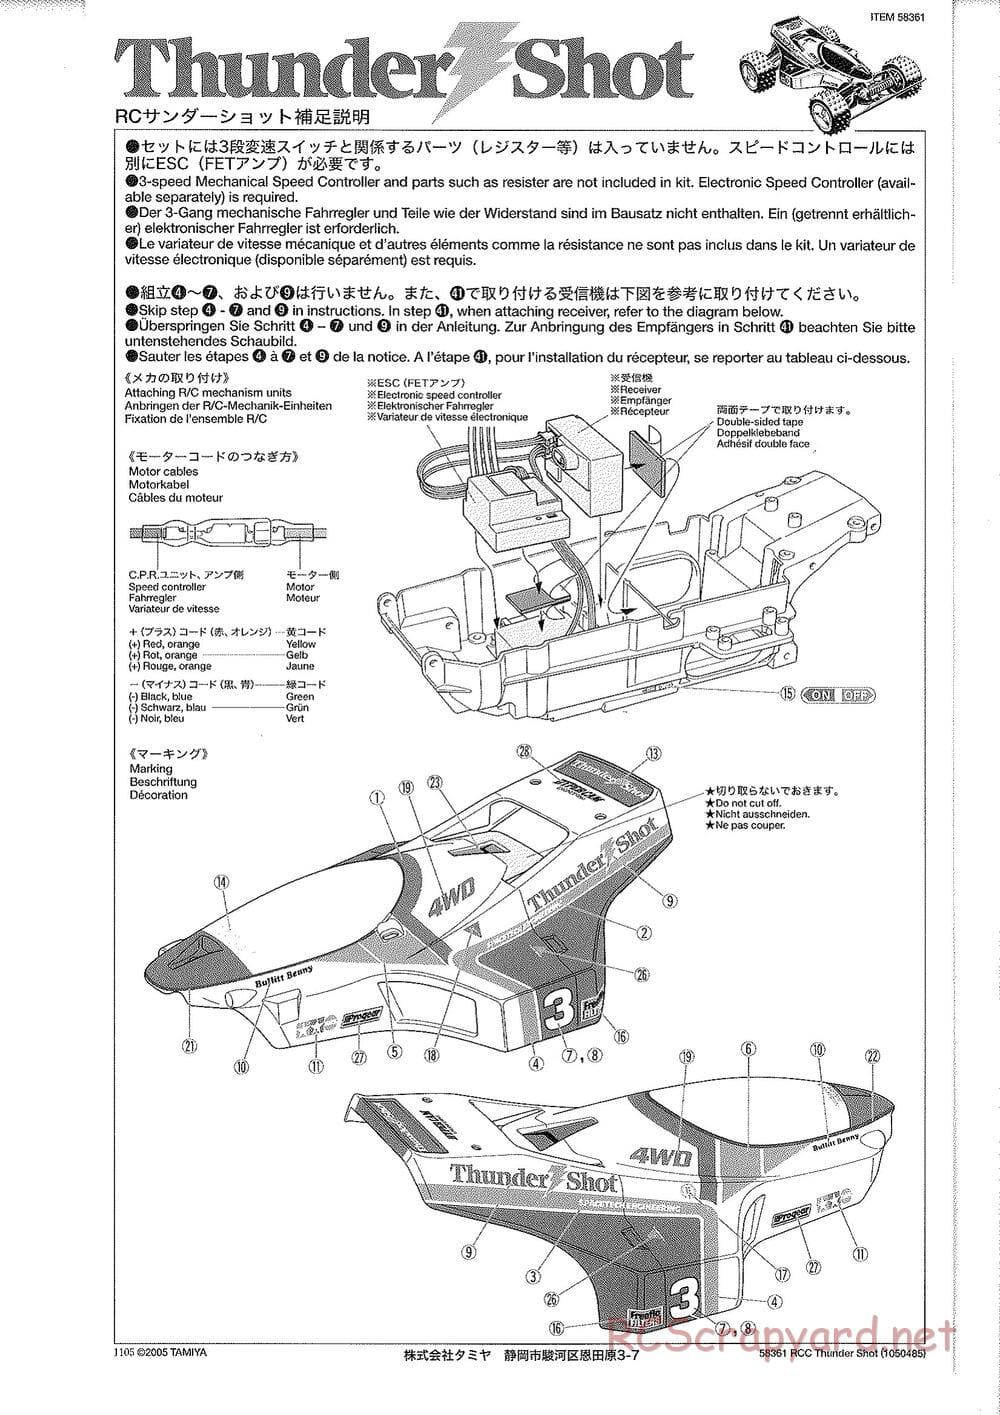 Tamiya - Thunder Shot - TS1 Chassis - Manual - Page 2